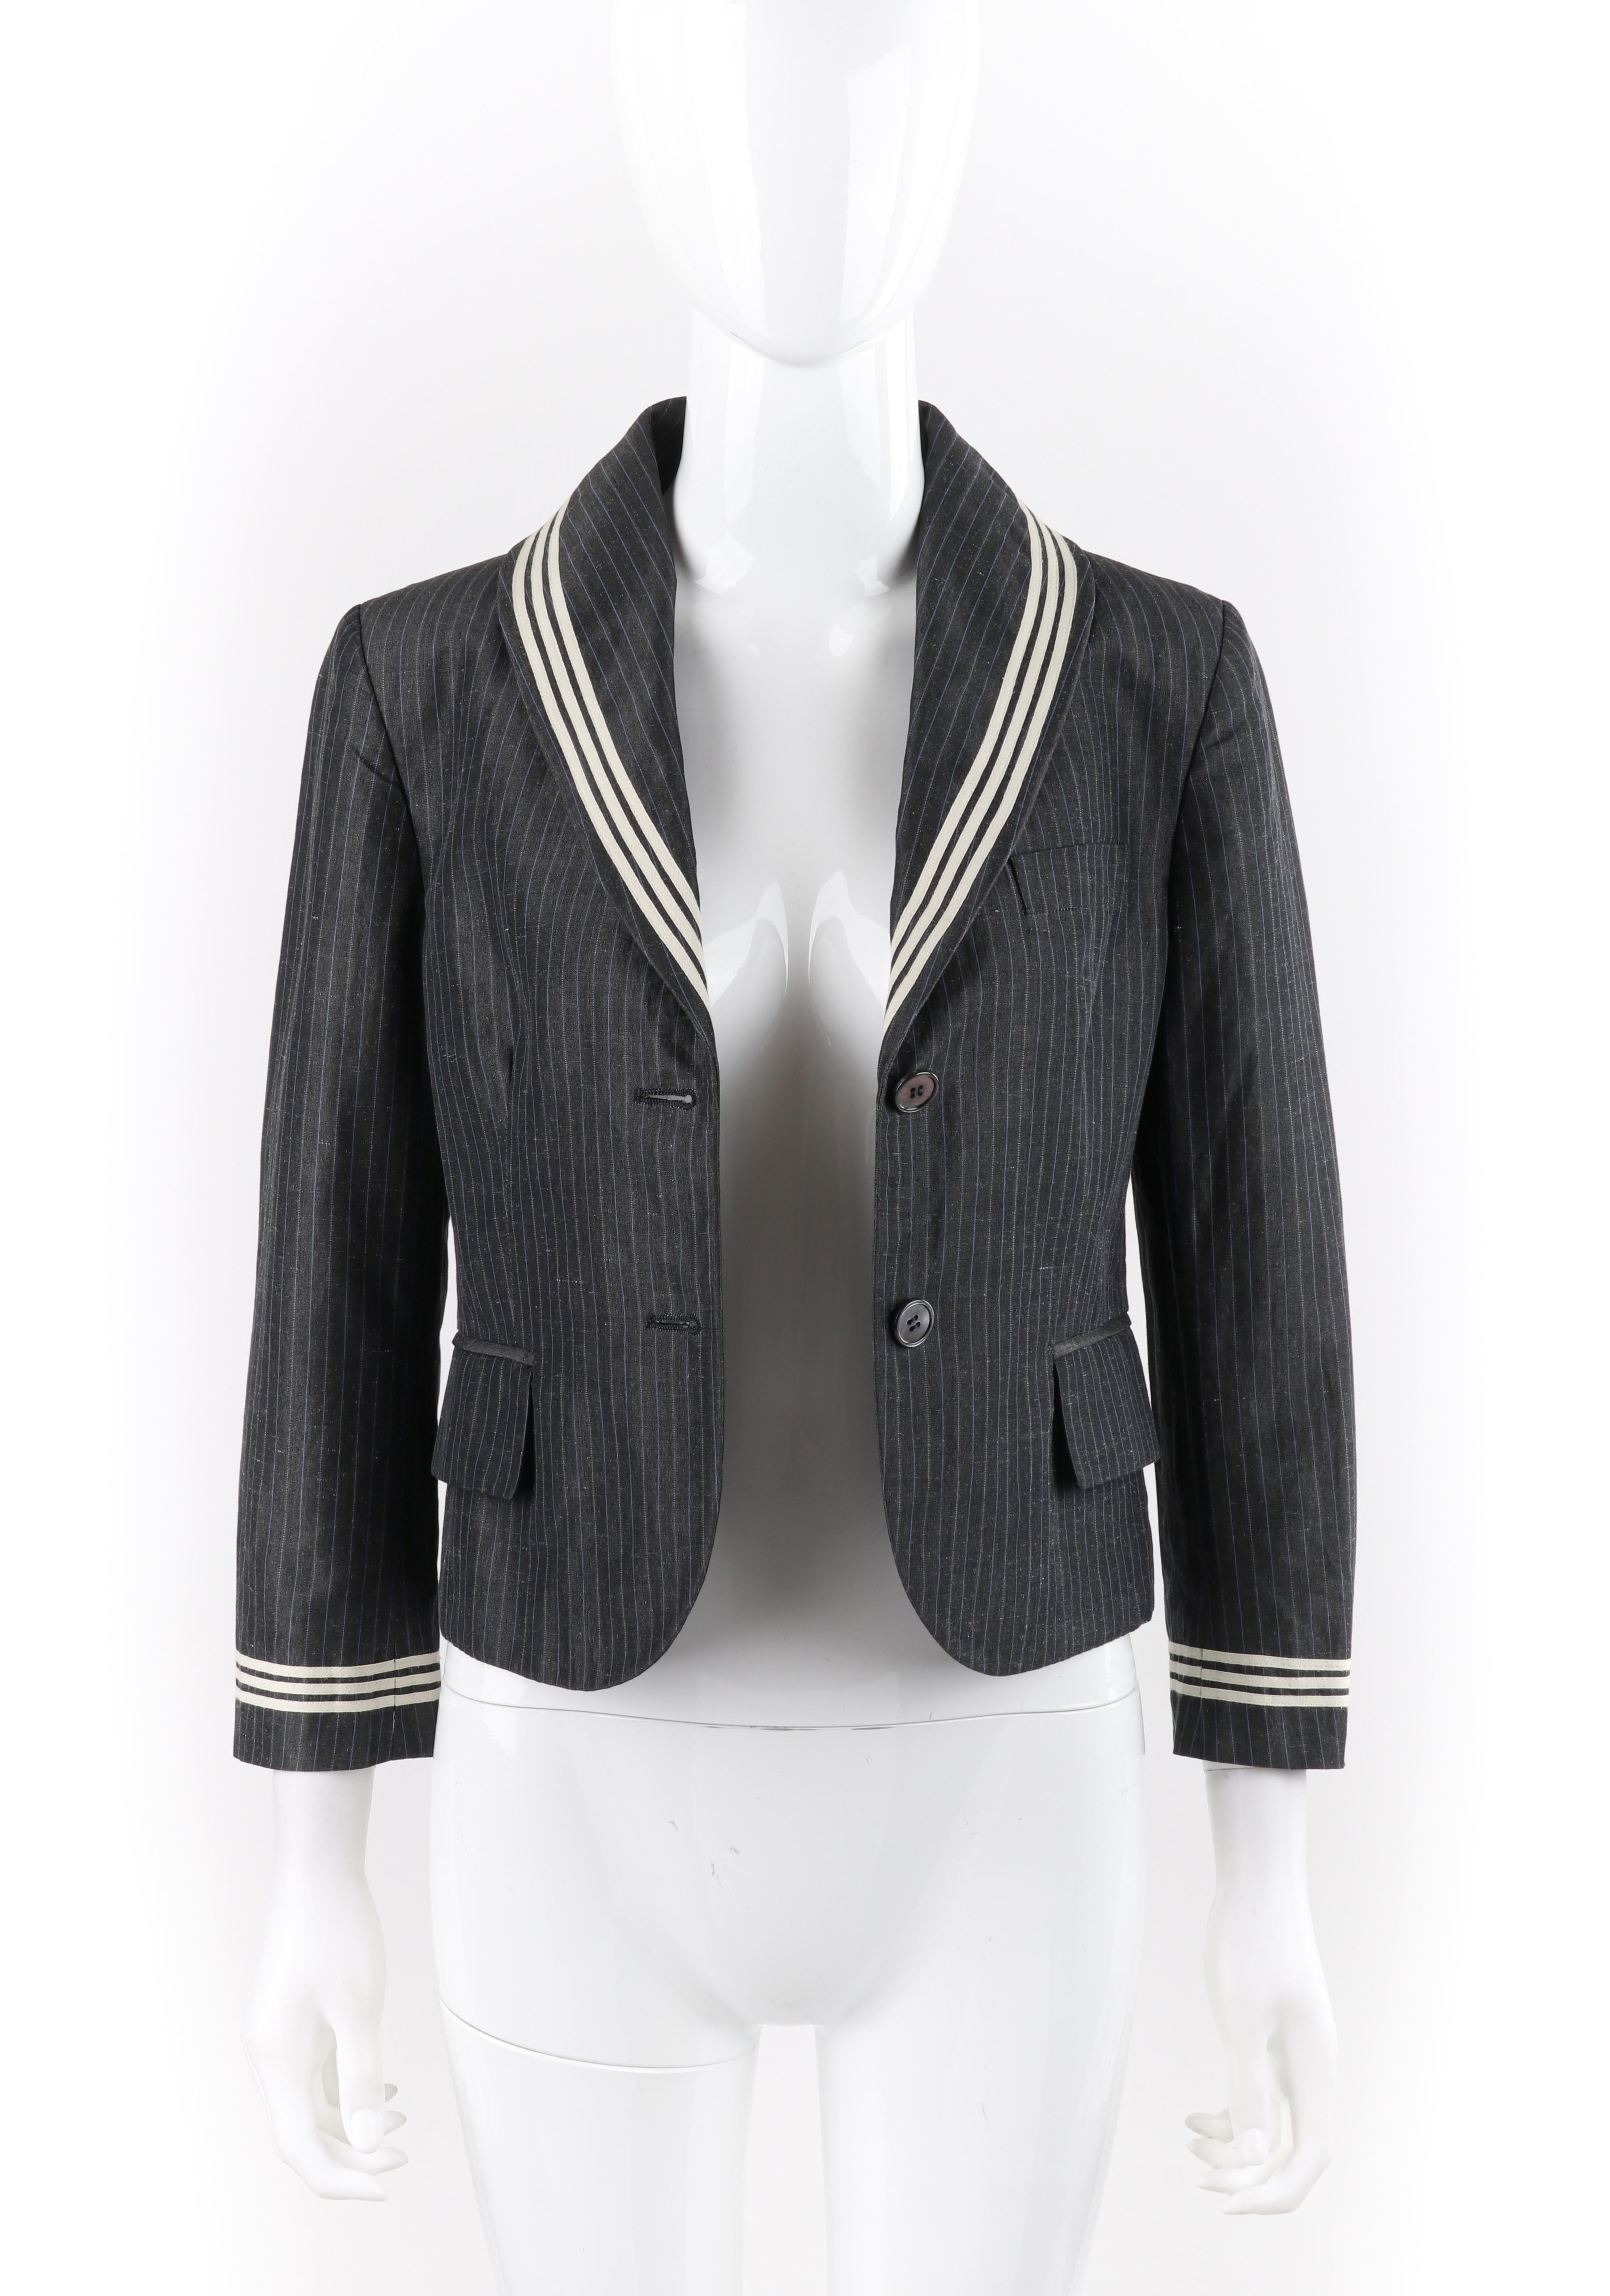 ALEXANDER McQUEEN S/S 2005 Grey Pinstripe Sailor Blazer Jacket Shawl Collar 2